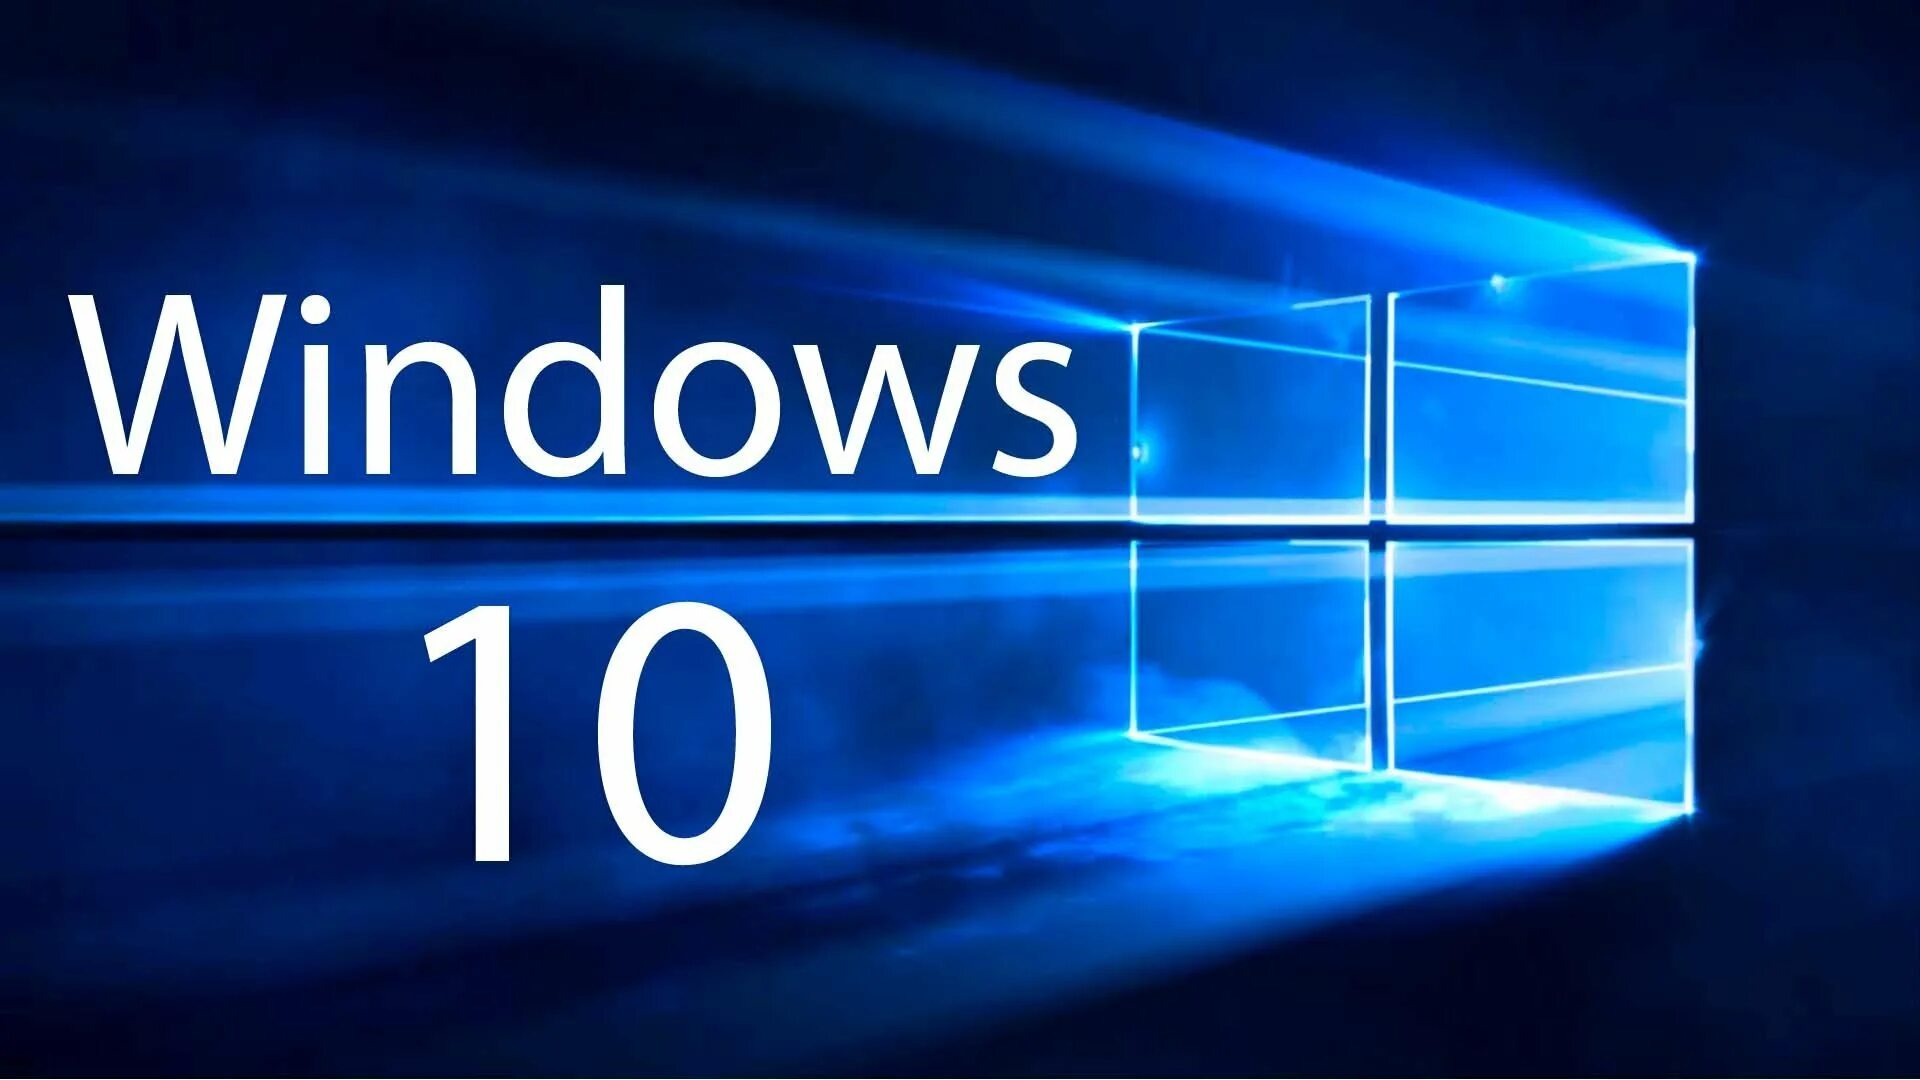 Windows 10 1024. Microsoft Windows 10. ОС виндовс 10. Логотип виндовс 10. Картинки виндовс 10.